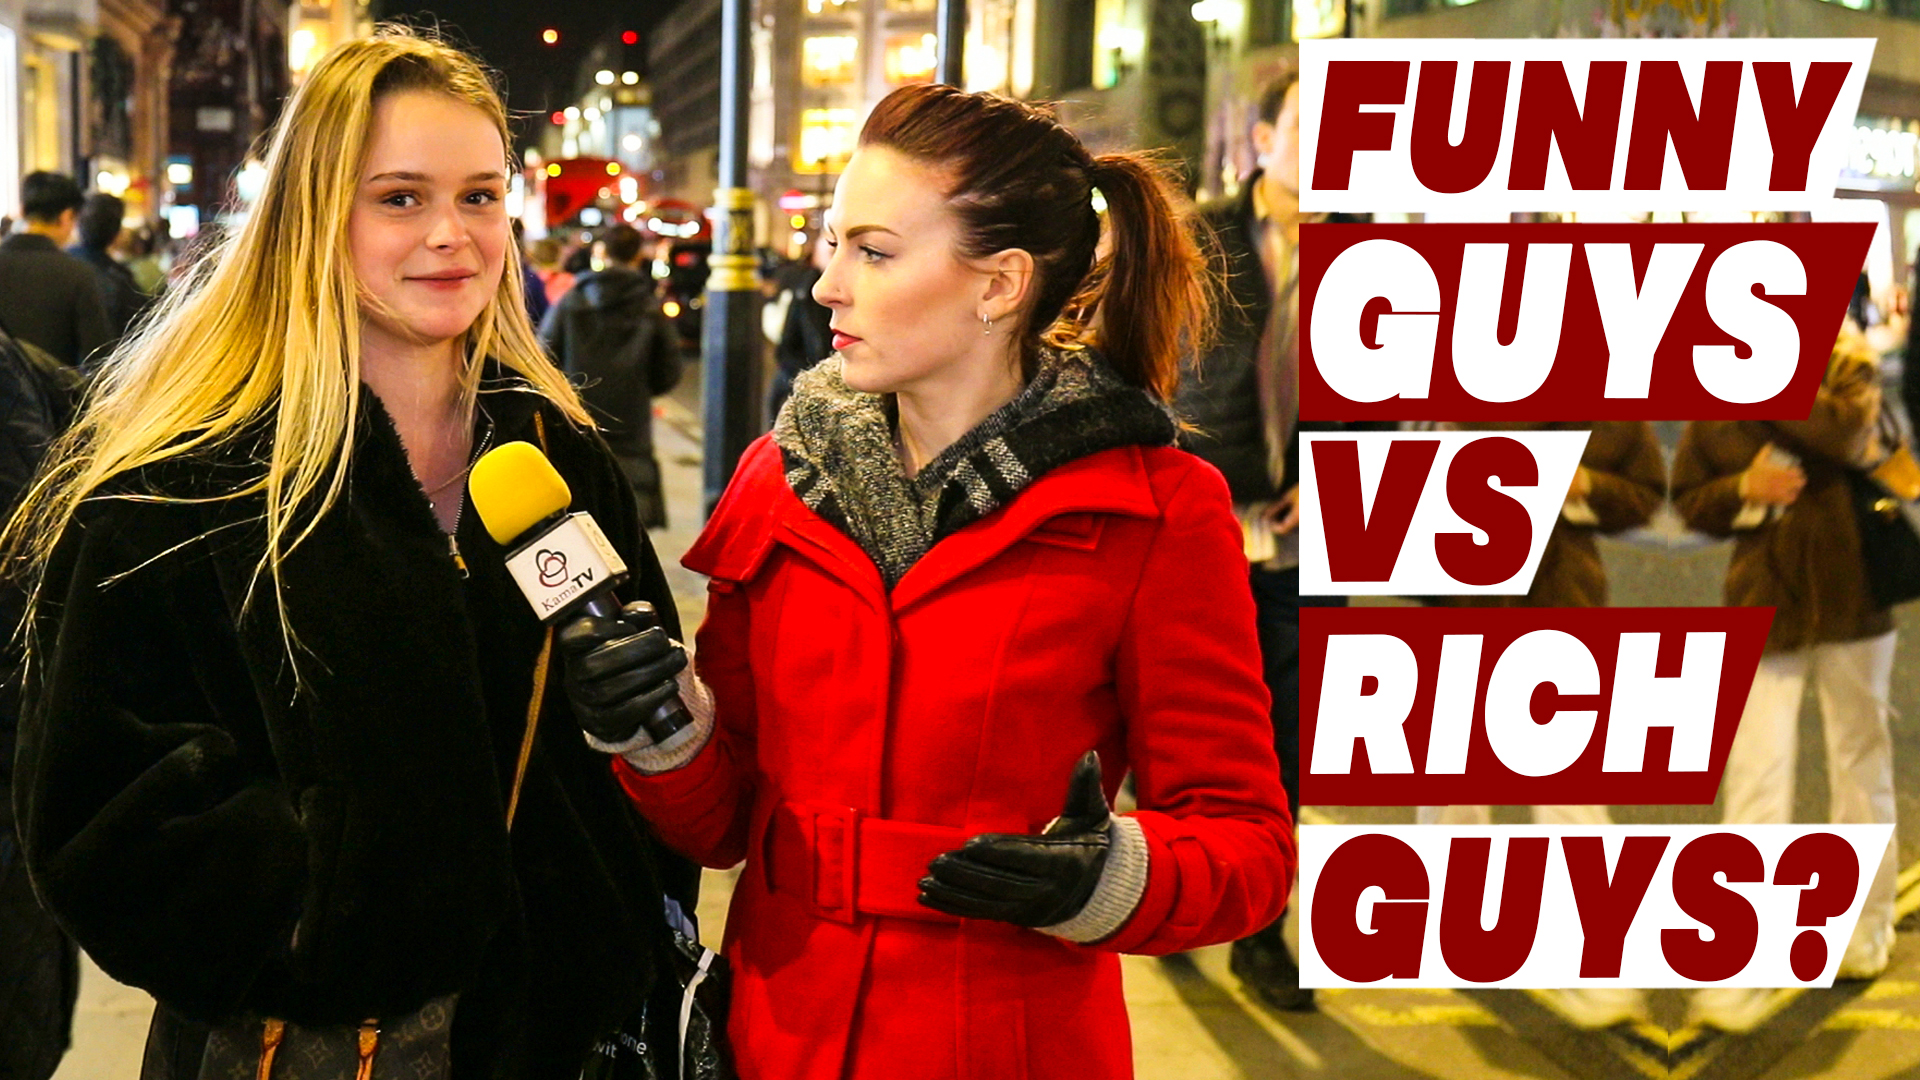 Funny Guys vs Rich Guys | What do women prefer?